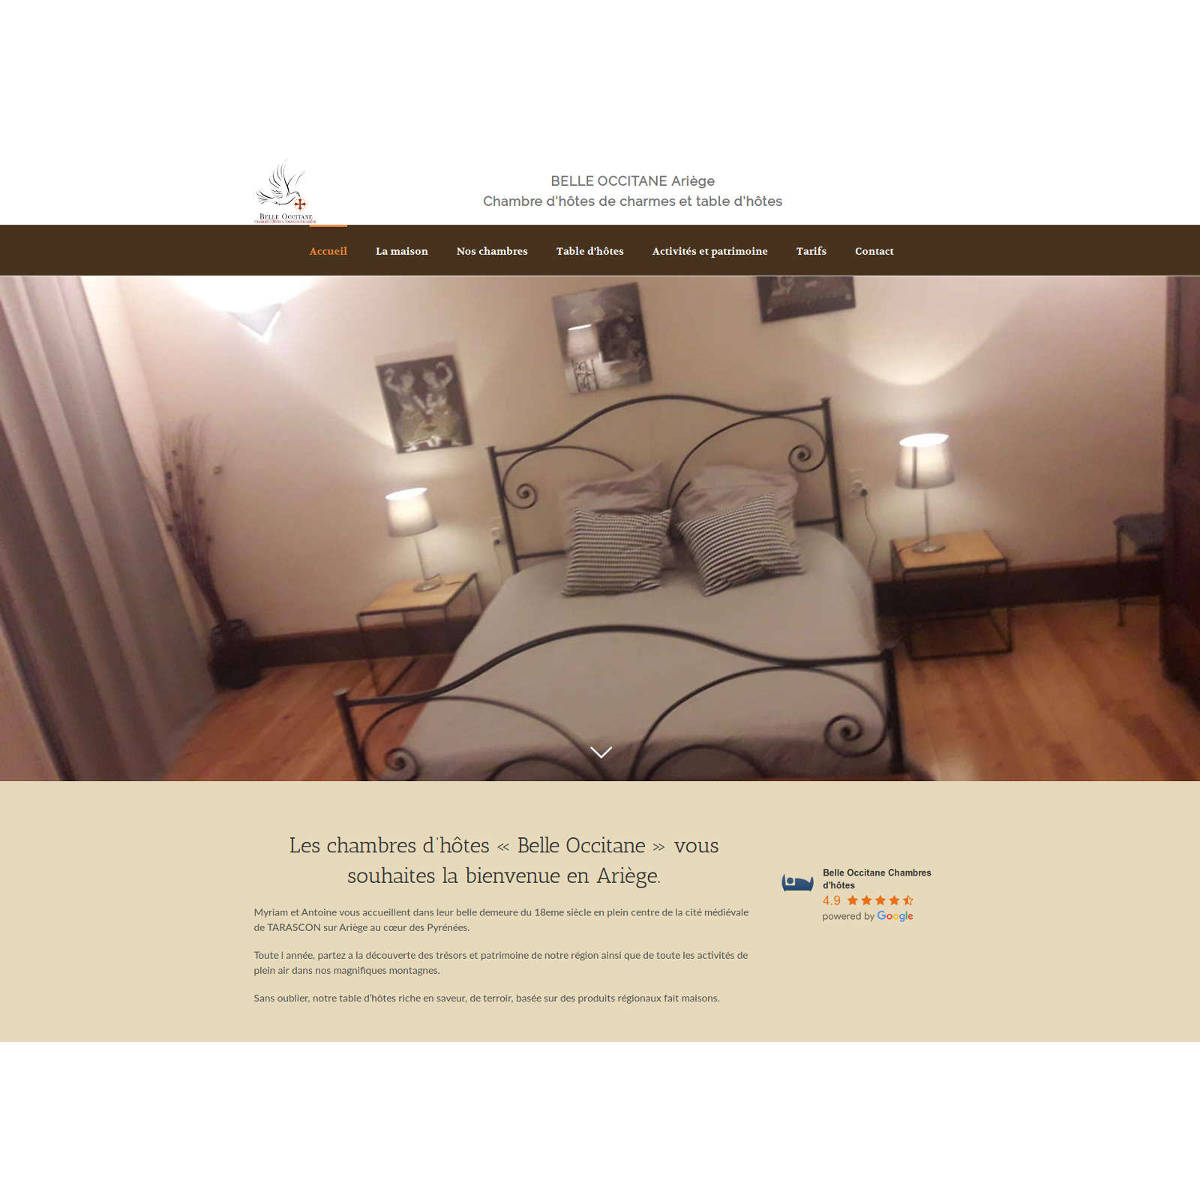 Capture d'écran du site internet Belle Occitane